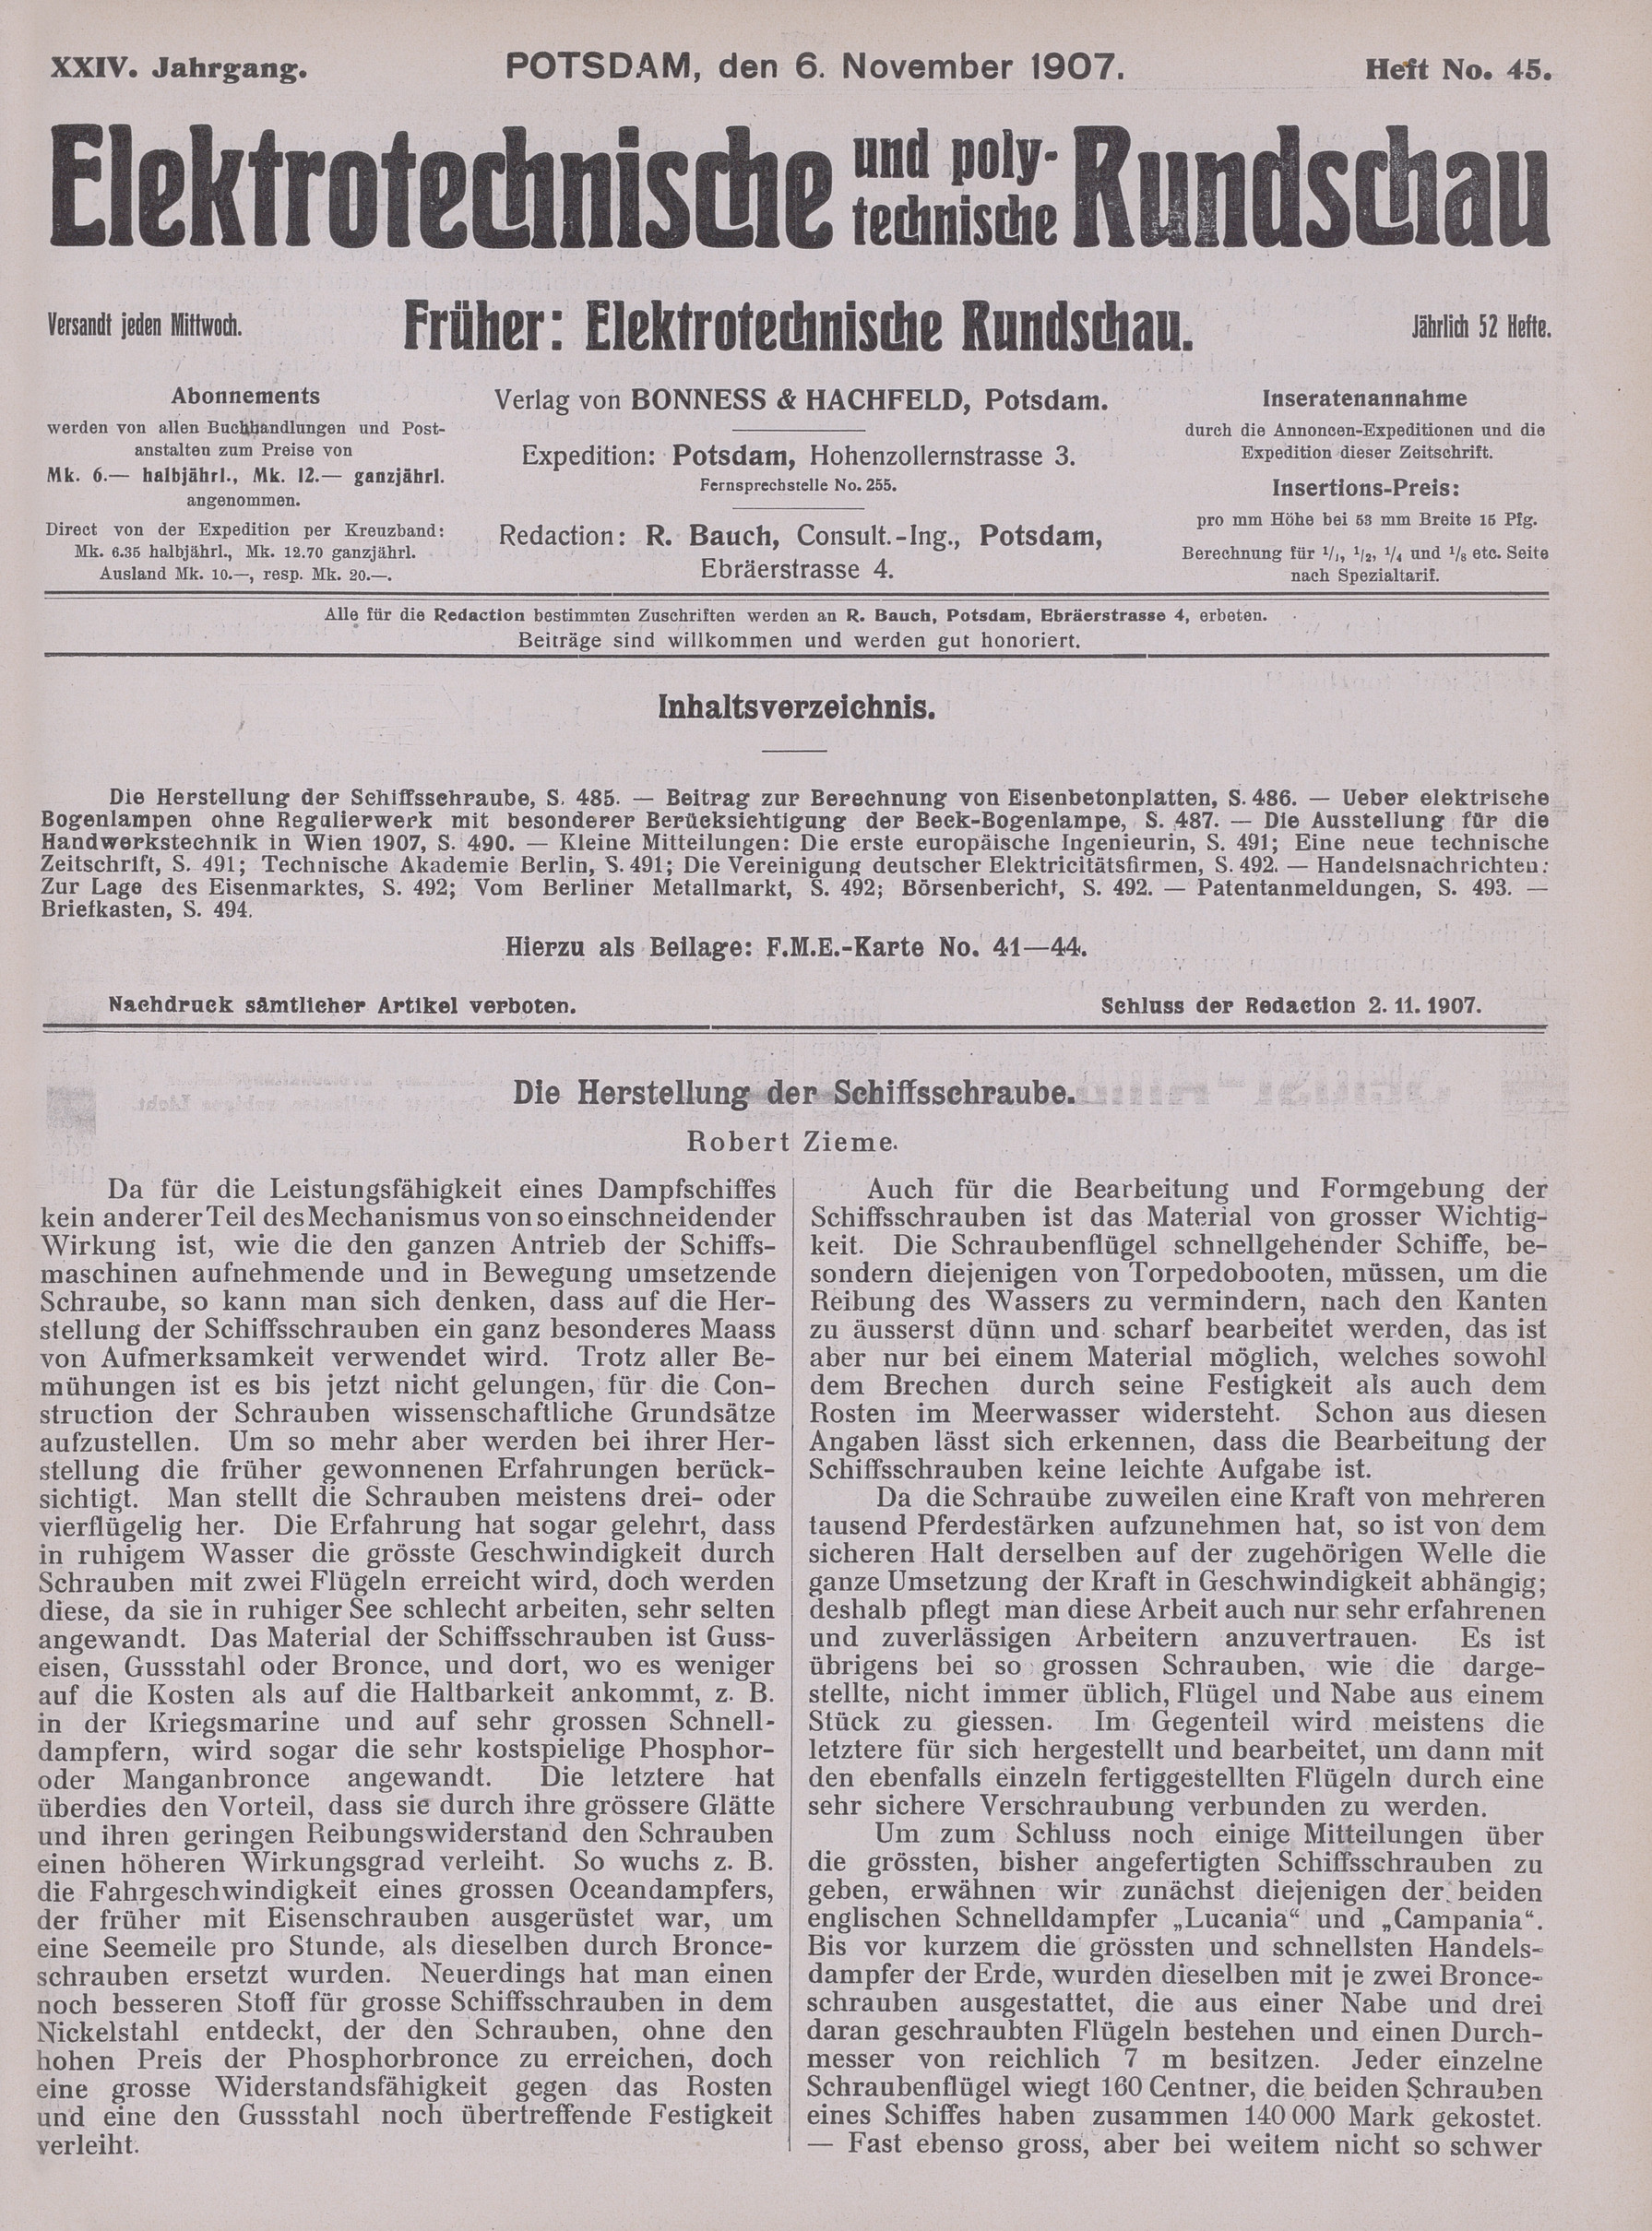 Elektrotechnische und polytechnische Rundschau, XXIV. Jahrgang, Heft No. 45